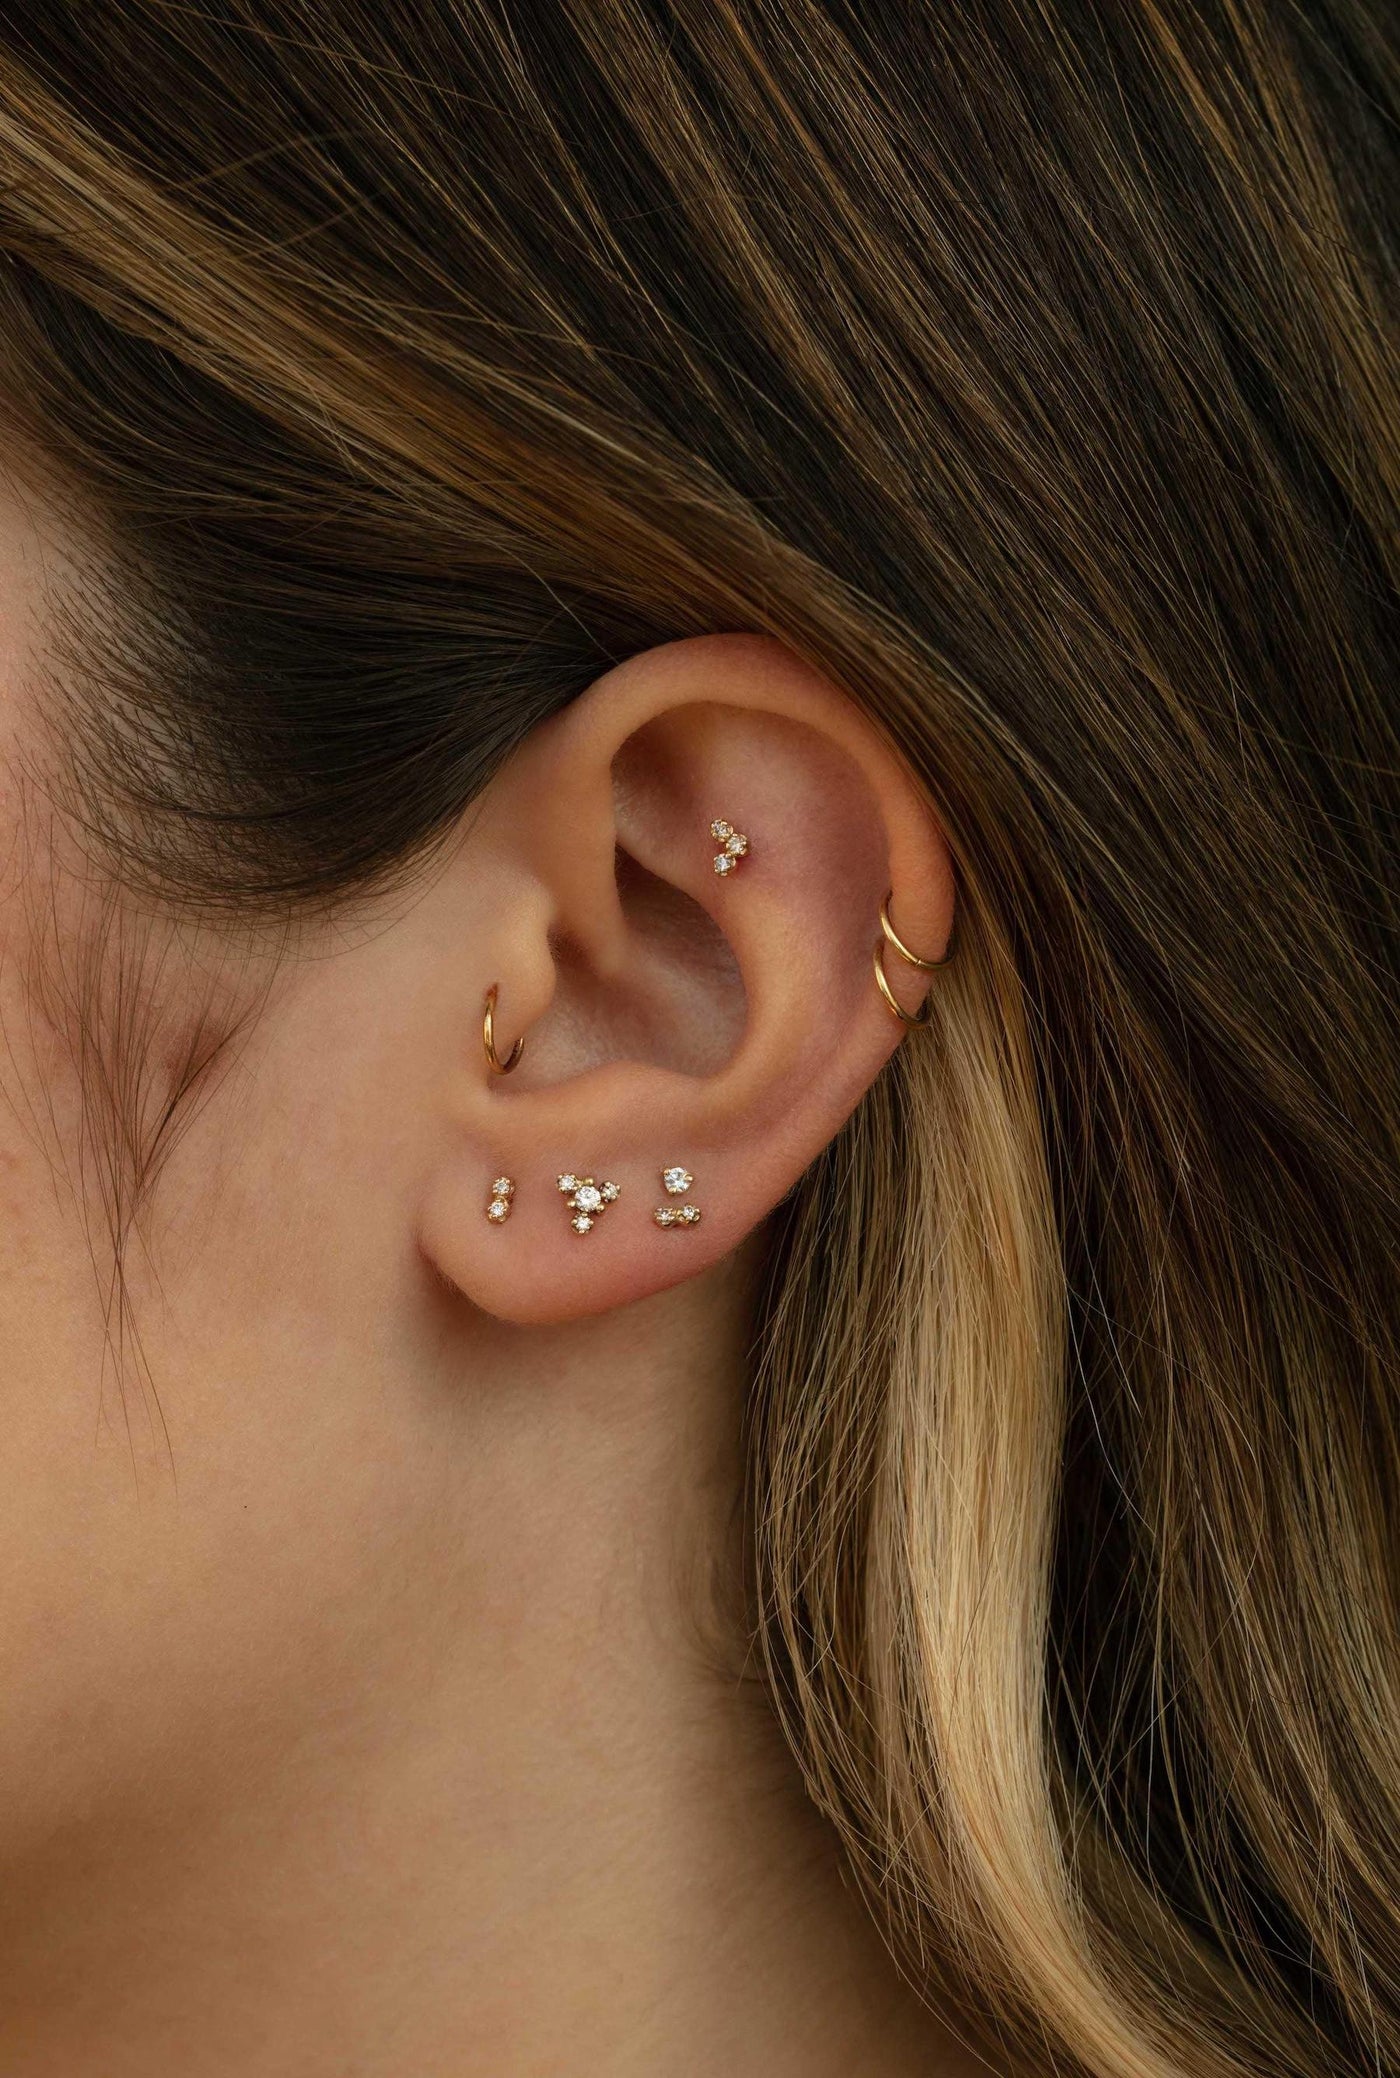 Tinkle Helix Earrings | Upper-Lobe Earrings – Boldiful